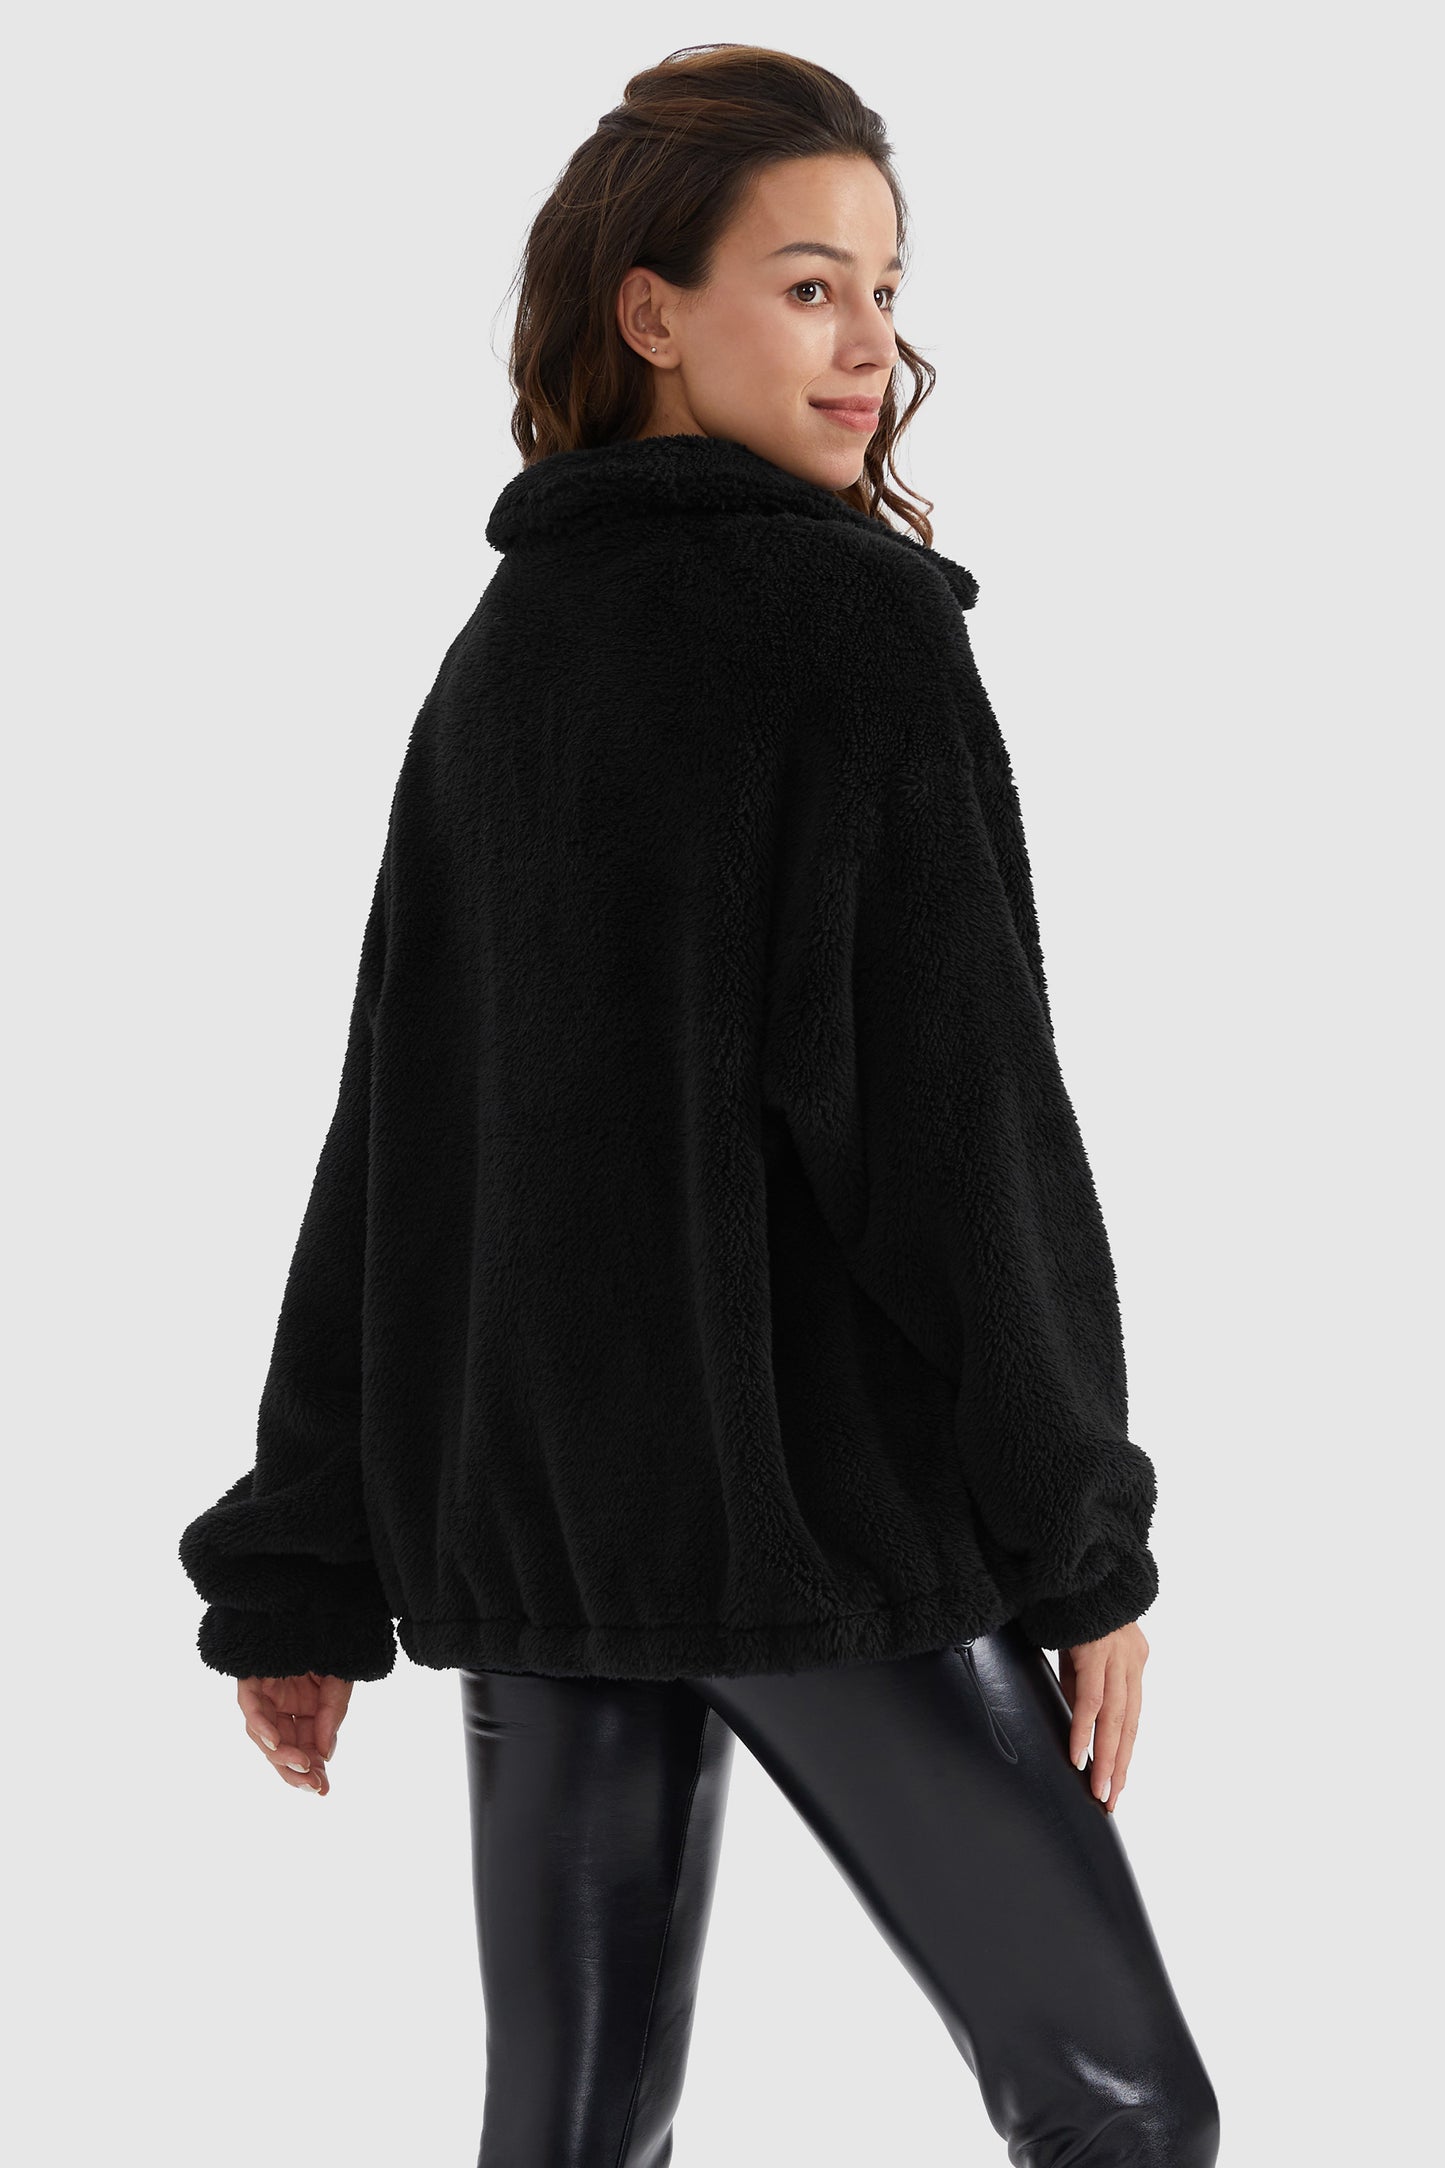 Zip Up Drawstring Hem Cozy fuzzy fleece Sweatshirt